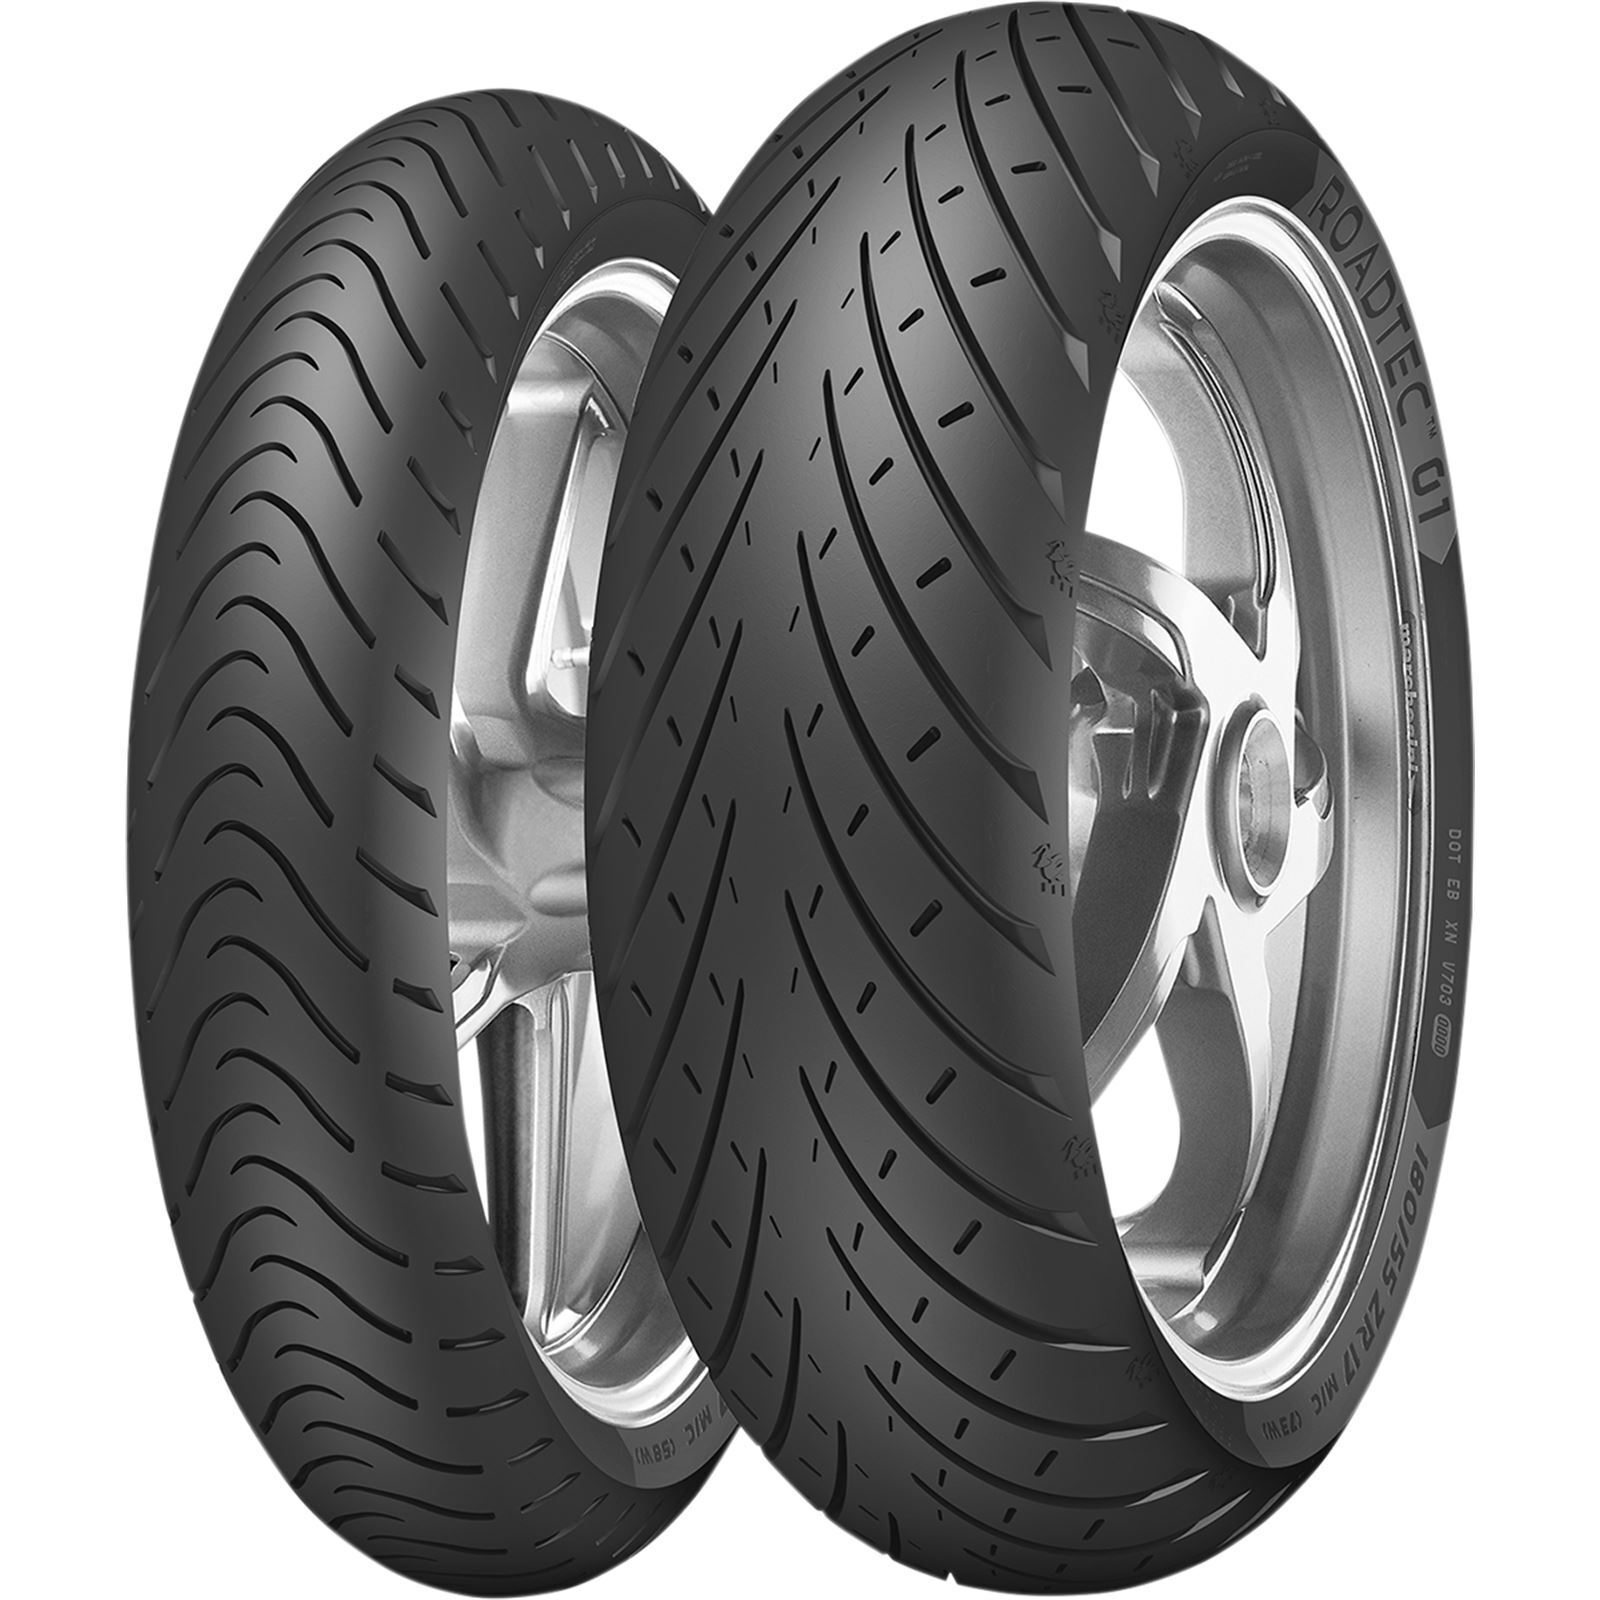 Metzeler Tire - Roadtec 01 - 3.25-19 54V 3242700